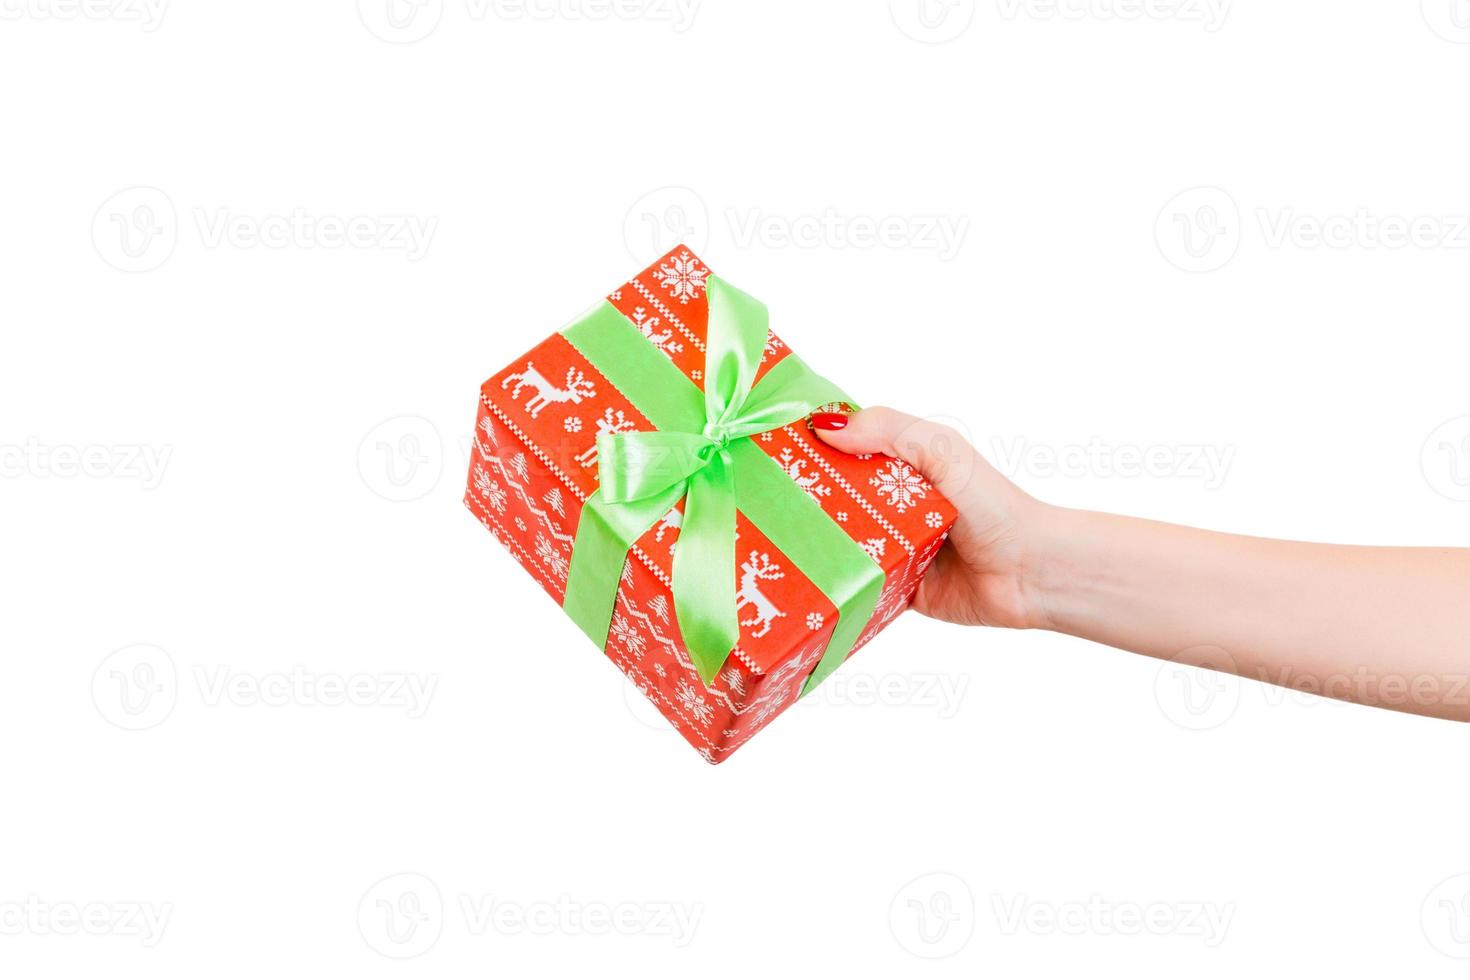 las manos de las mujeres dan Navidad envuelta u otro regalo hecho a mano en papel rojo con cinta verde. aislado sobre fondo blanco, vista superior. concepto de caja de regalo de acción de gracias foto